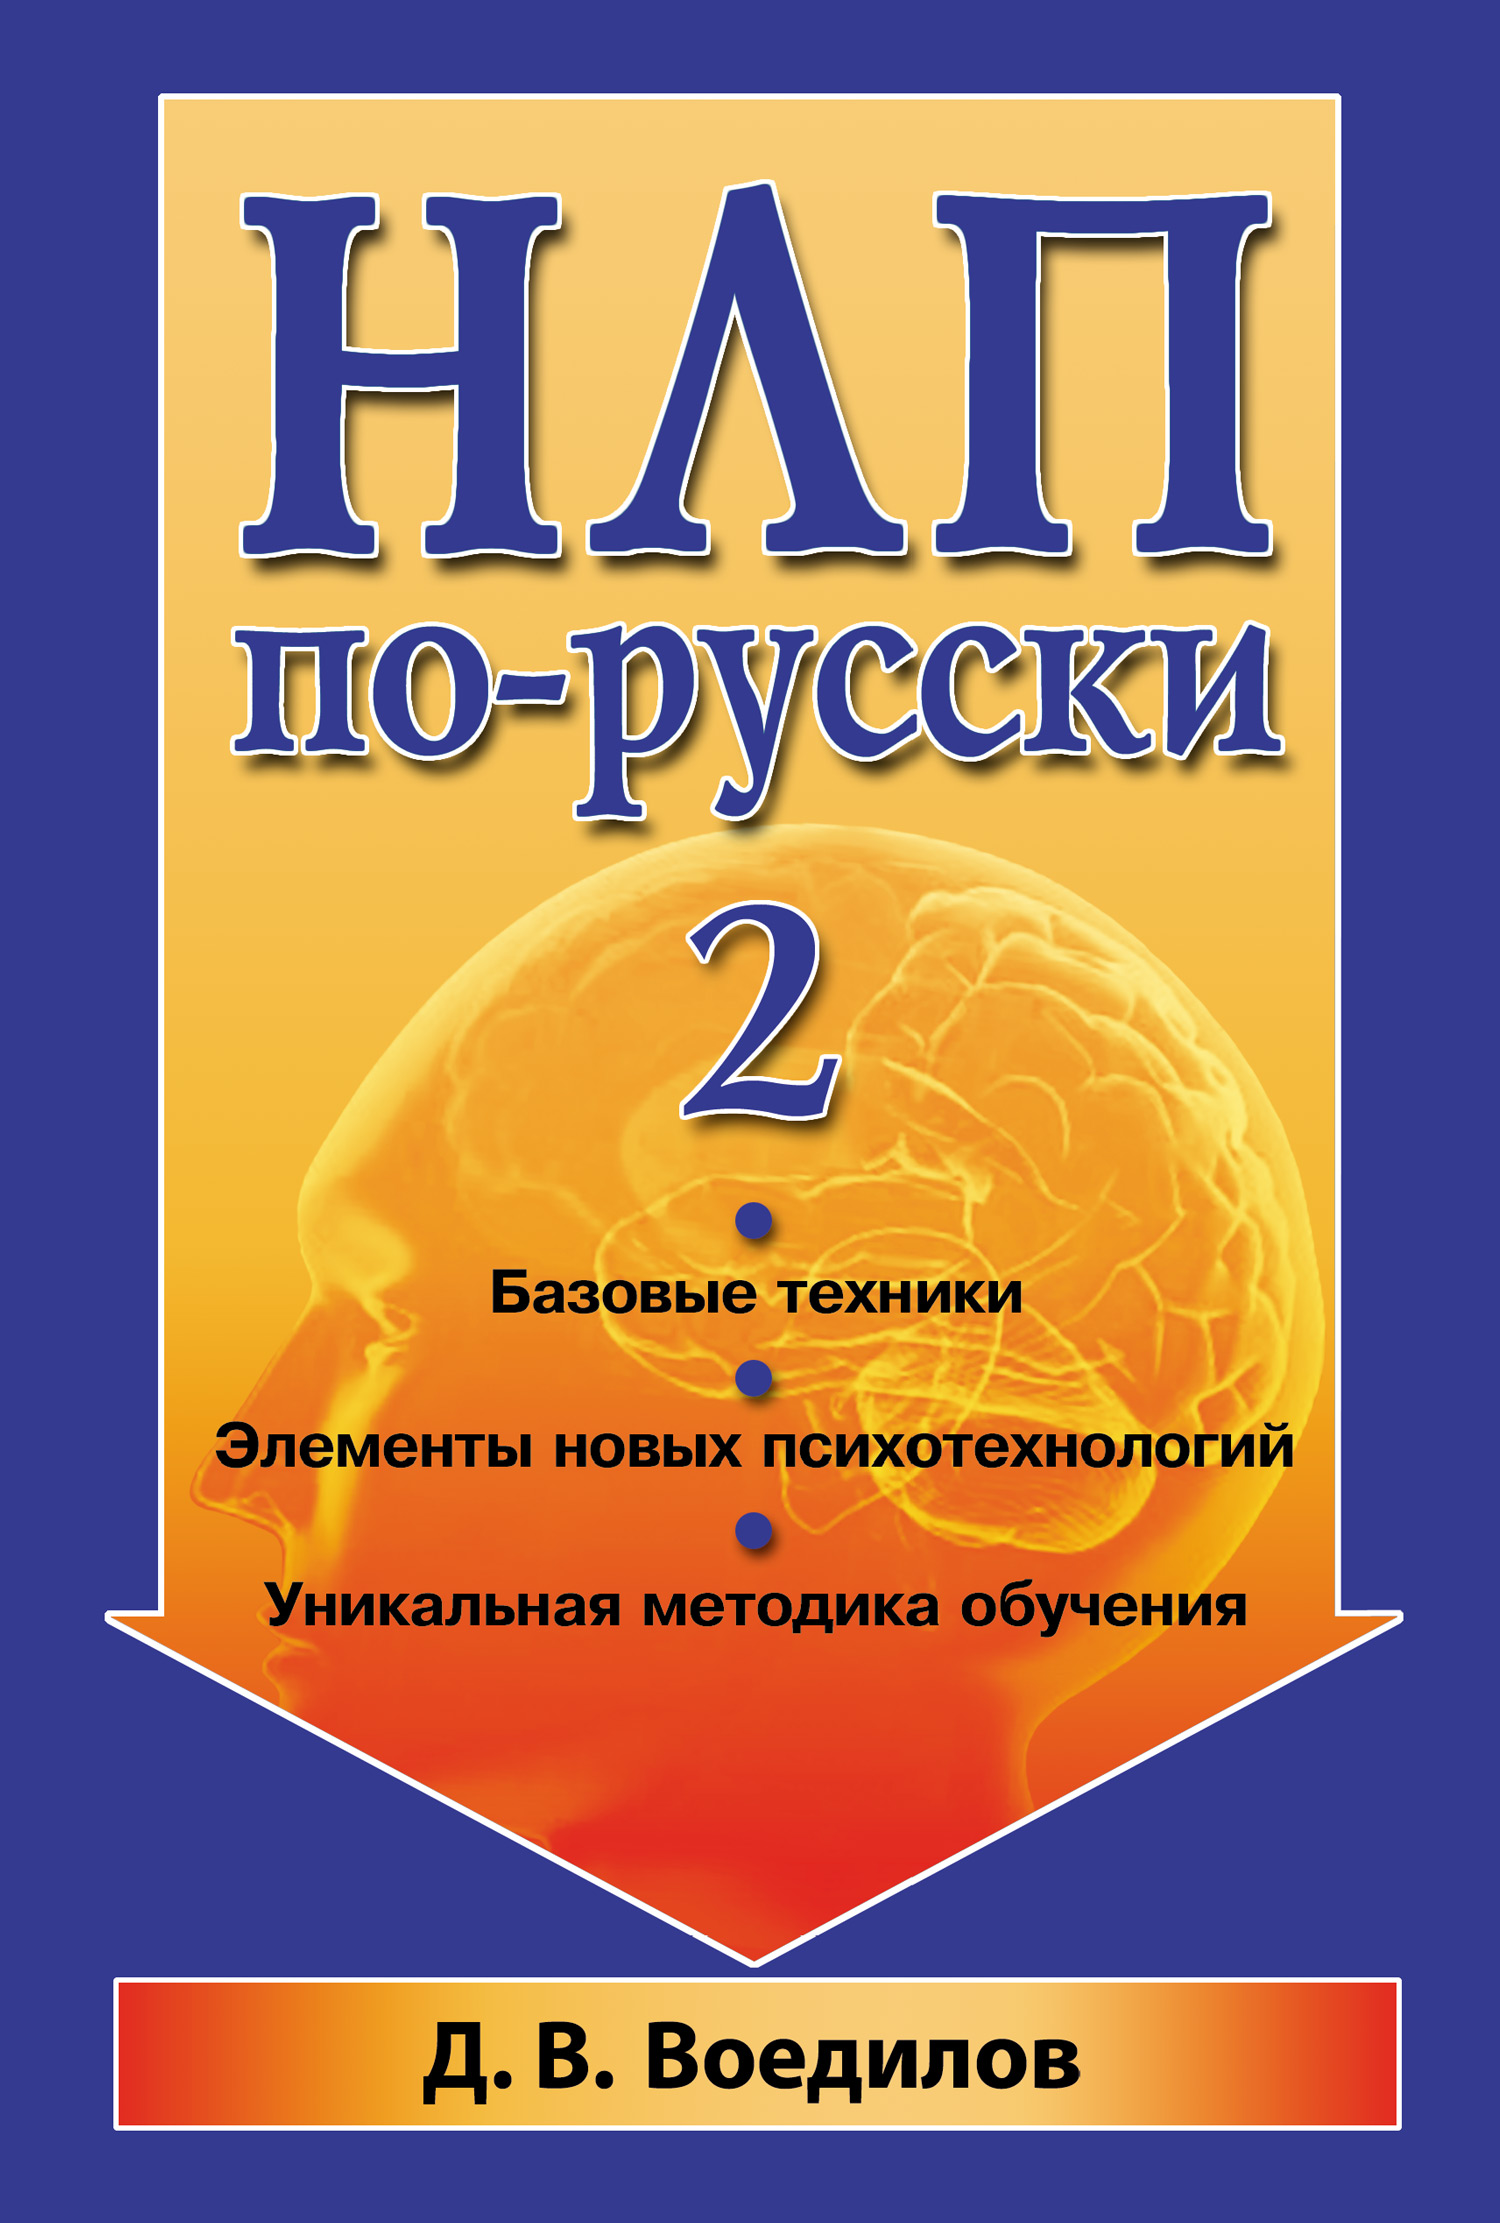 Книга НЛП по-русски – 2 из серии , созданная Дмитрий Воедилов, может относится к жанру Общая психология, Психотерапия и консультирование. Стоимость электронной книги НЛП по-русски – 2 с идентификатором 3951705 составляет 59.90 руб.